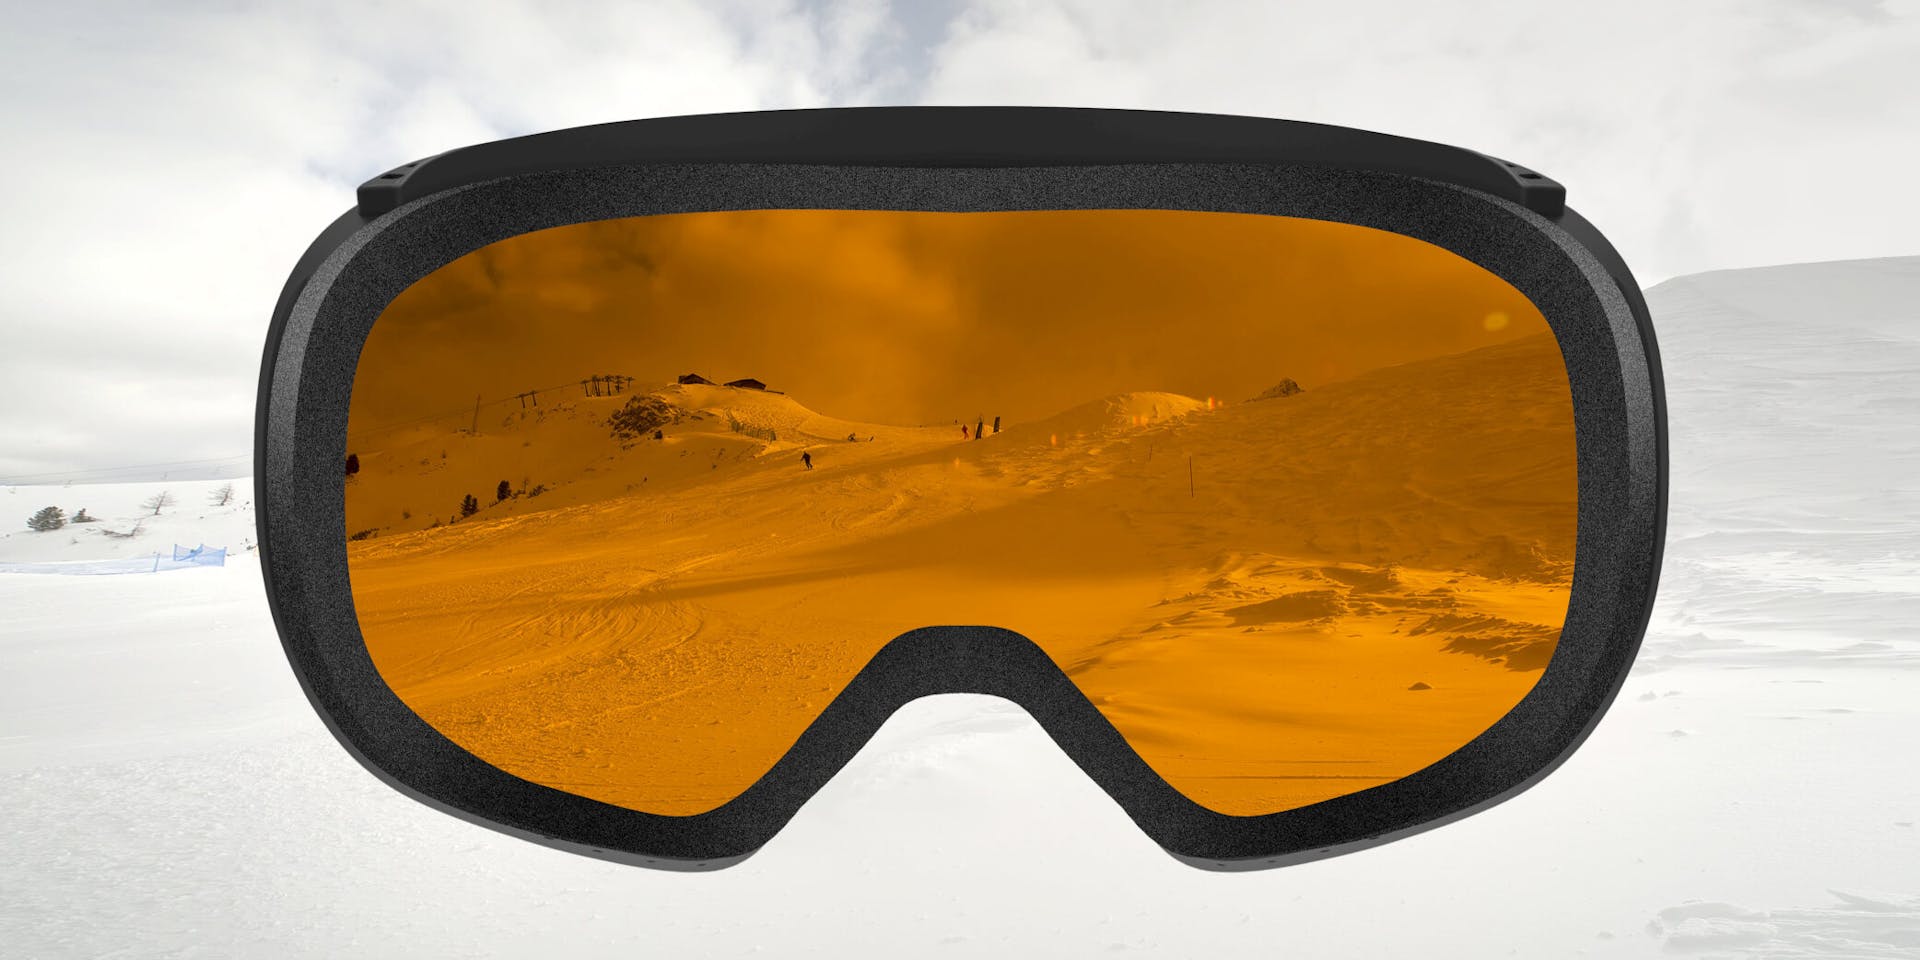 Óculos para neve ZEISS com tecnologia de SONAR